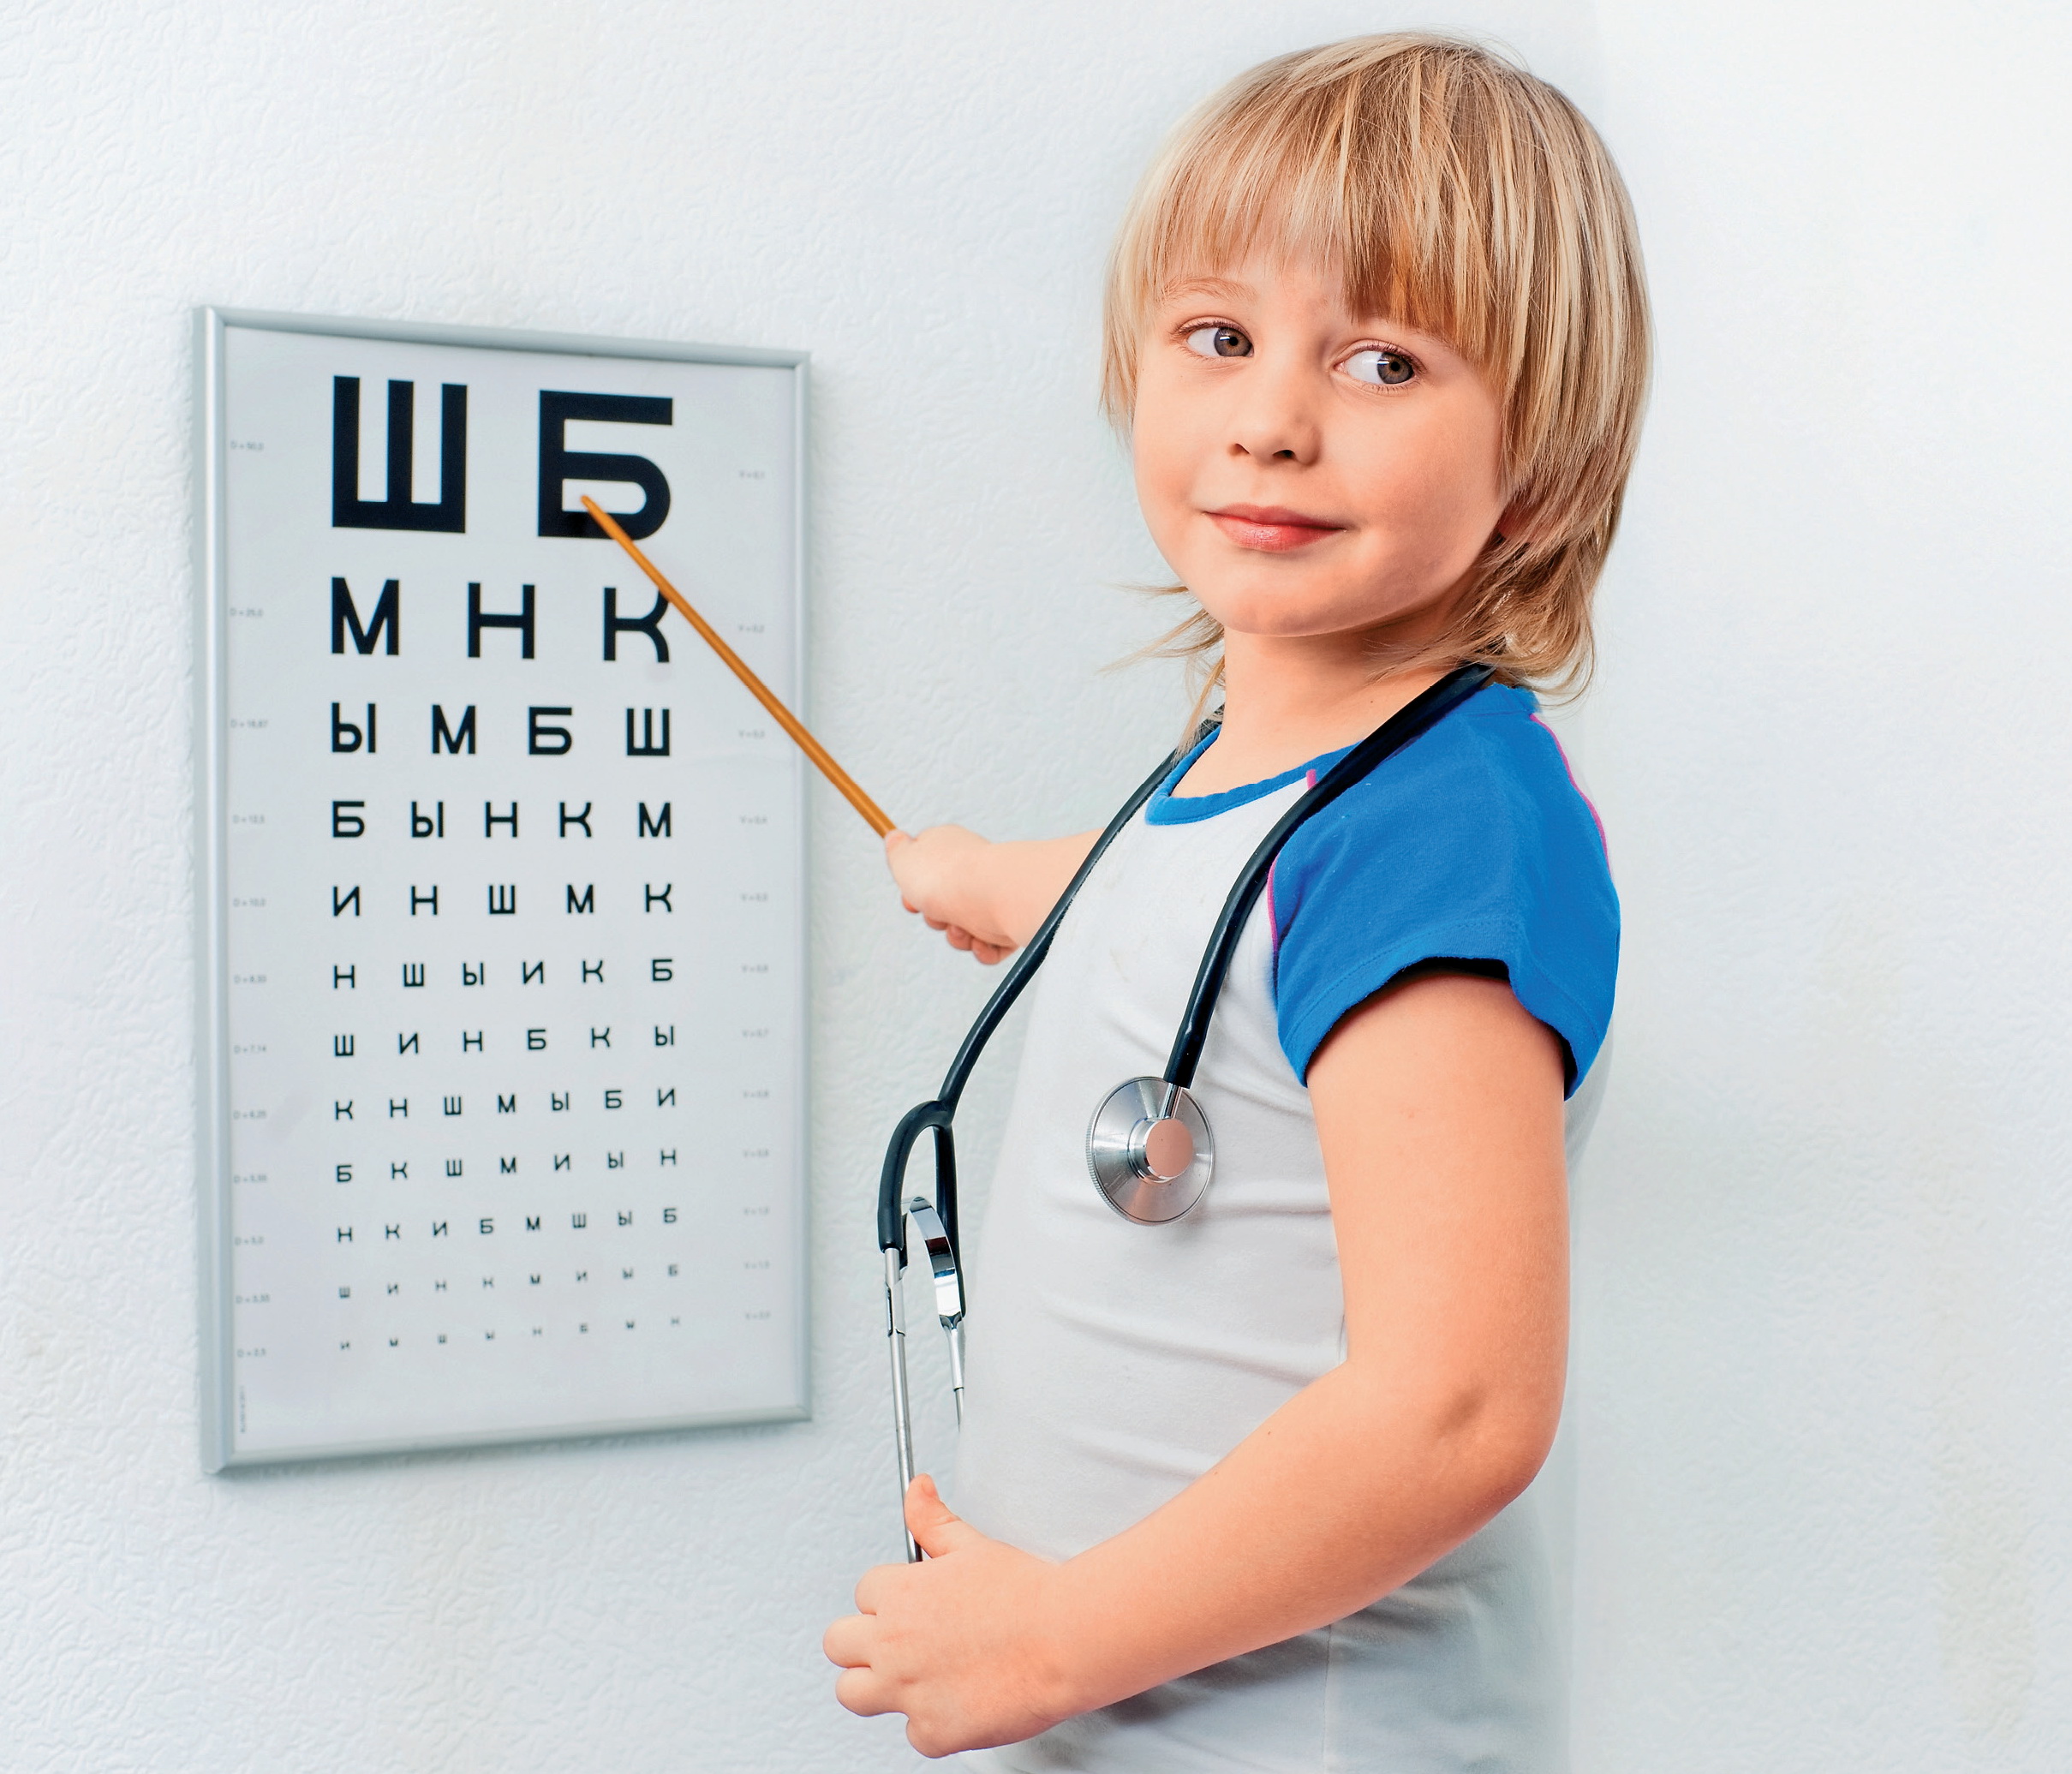 Как сохранить хорошее зрение у ребенка? Консультация офтальмолога